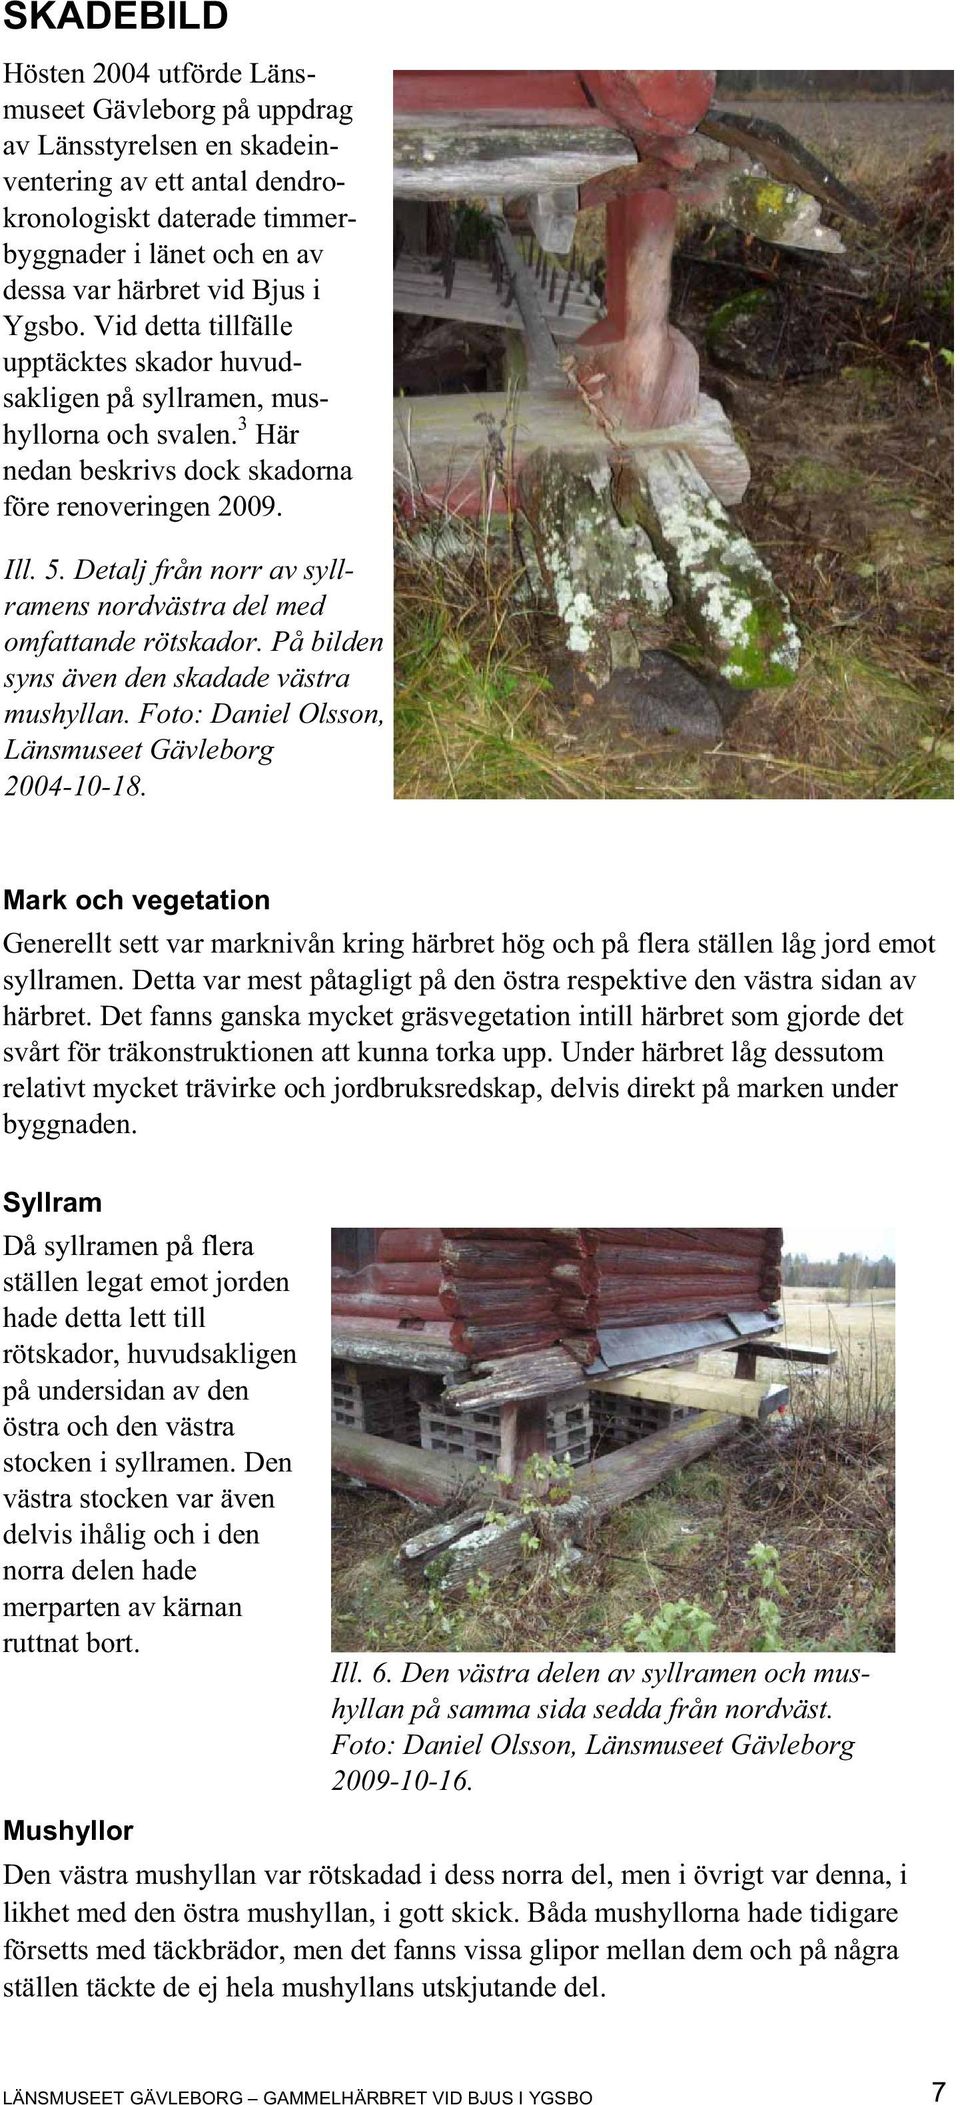 Detalj från norr av syllramens nordvästra del med omfattande rötskador. På bilden syns även den skadade västra mushyllan. Foto: Daniel Olsson, Länsmuseet Gävleborg 2004-10-18.